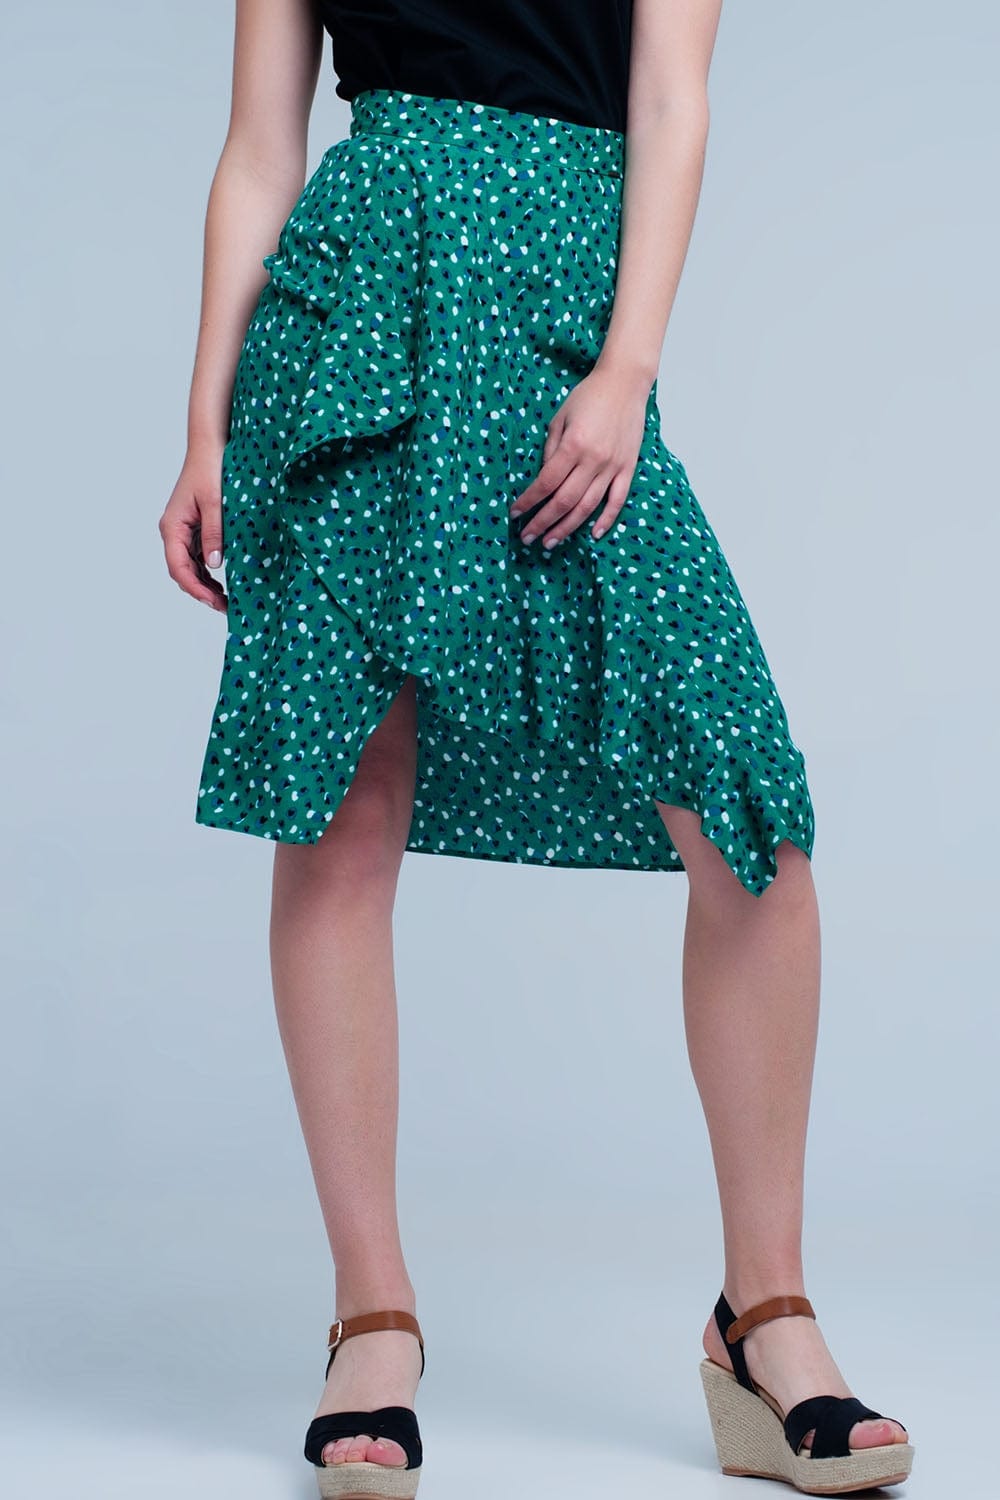 Q2 Women's Skirt Green Skirt with Flower Print